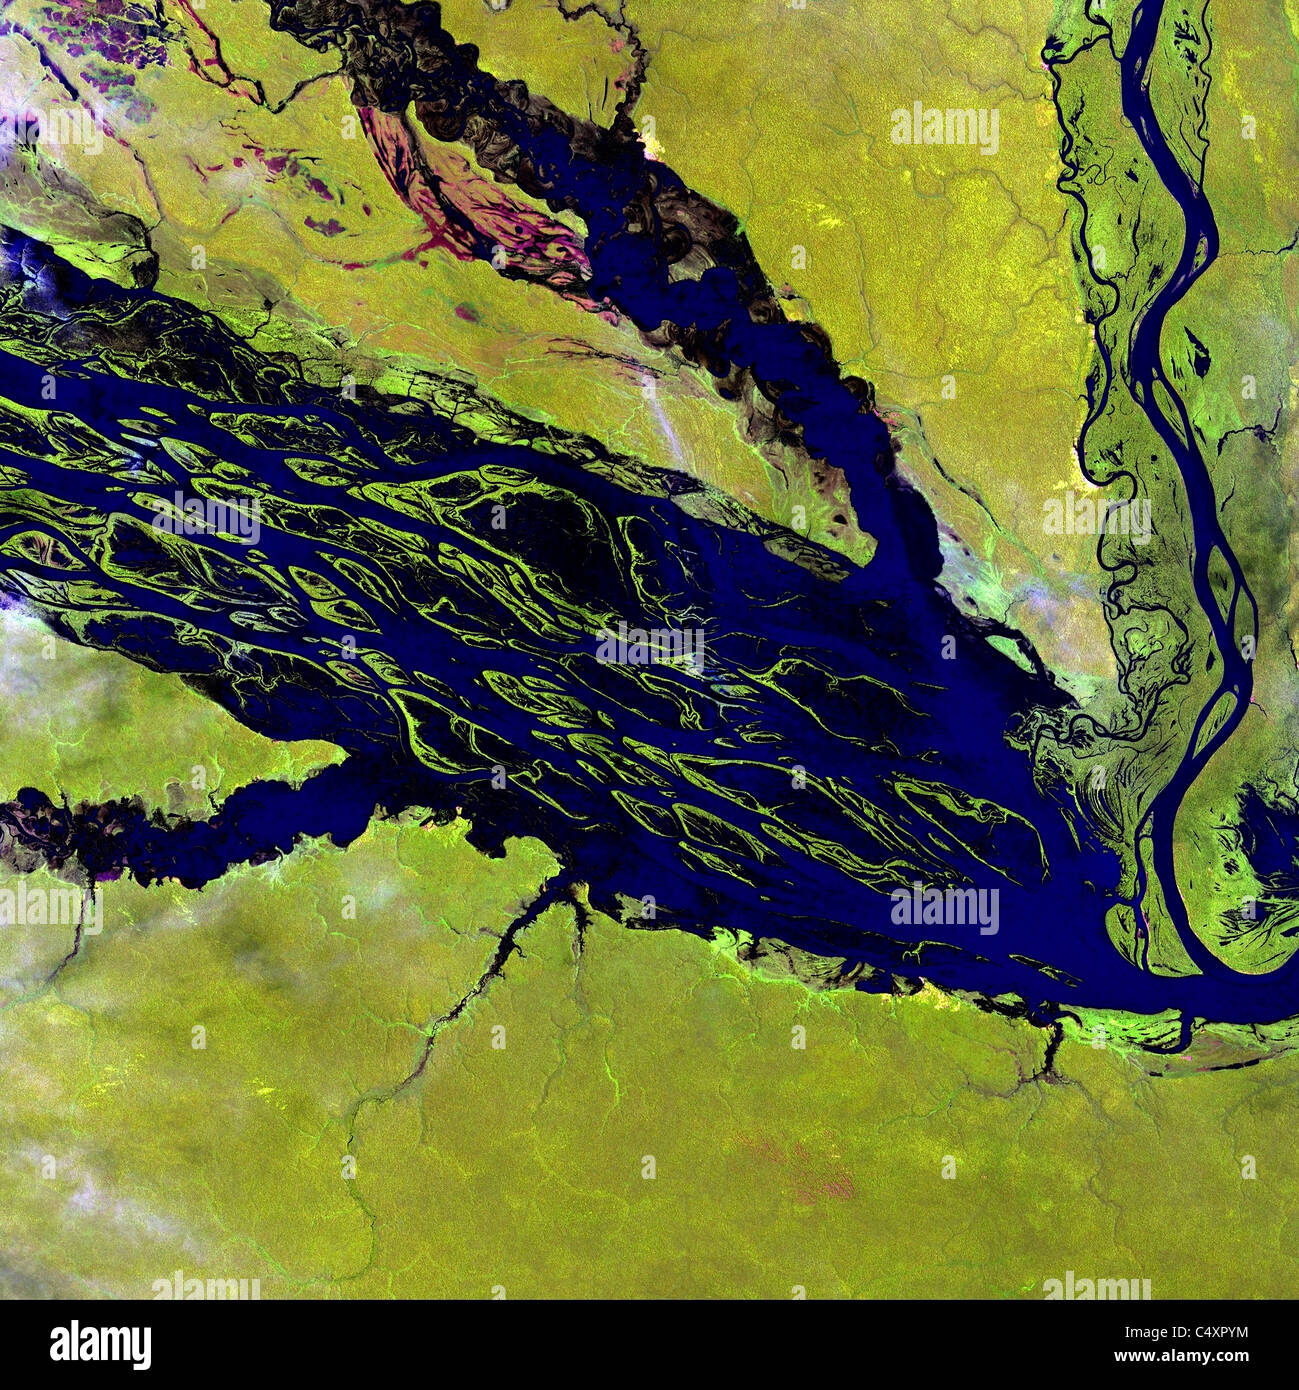 Amazon river satellite view immagini e fotografie stock ad alta risoluzione  - Alamy